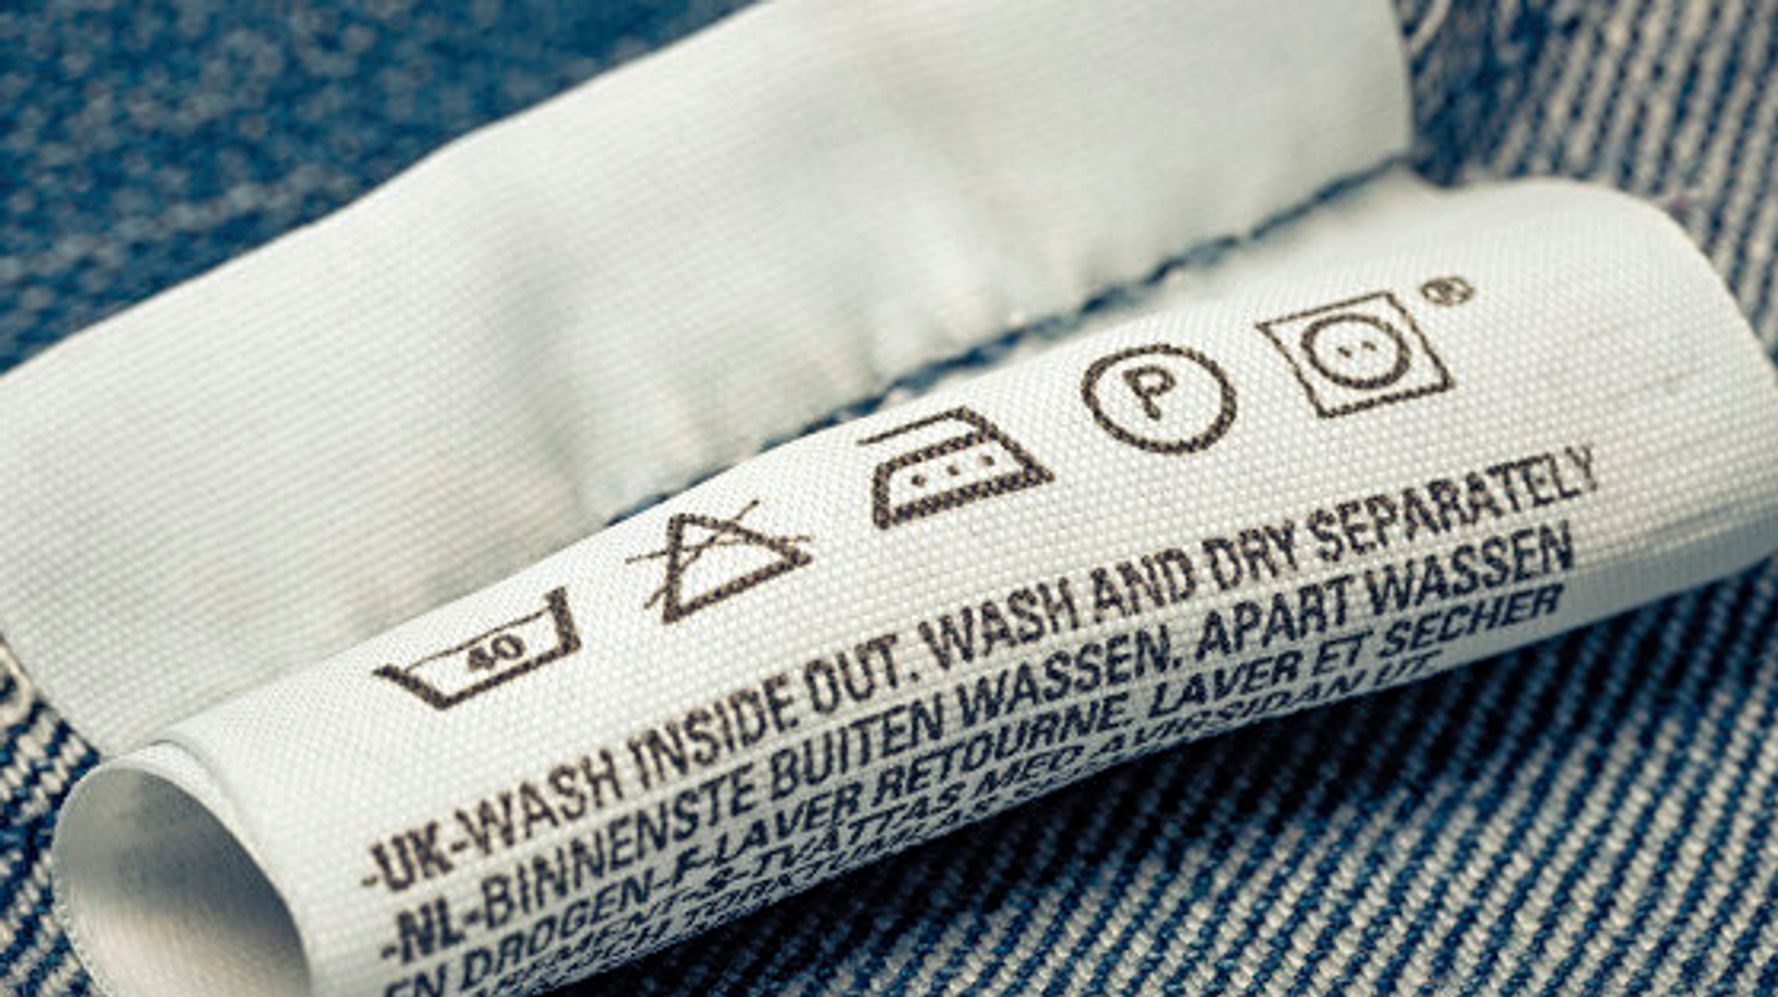 Guía rápida para entender los símbolos de lavado, y planchado de las etiquetas de ropa | El HuffPost Tendencias